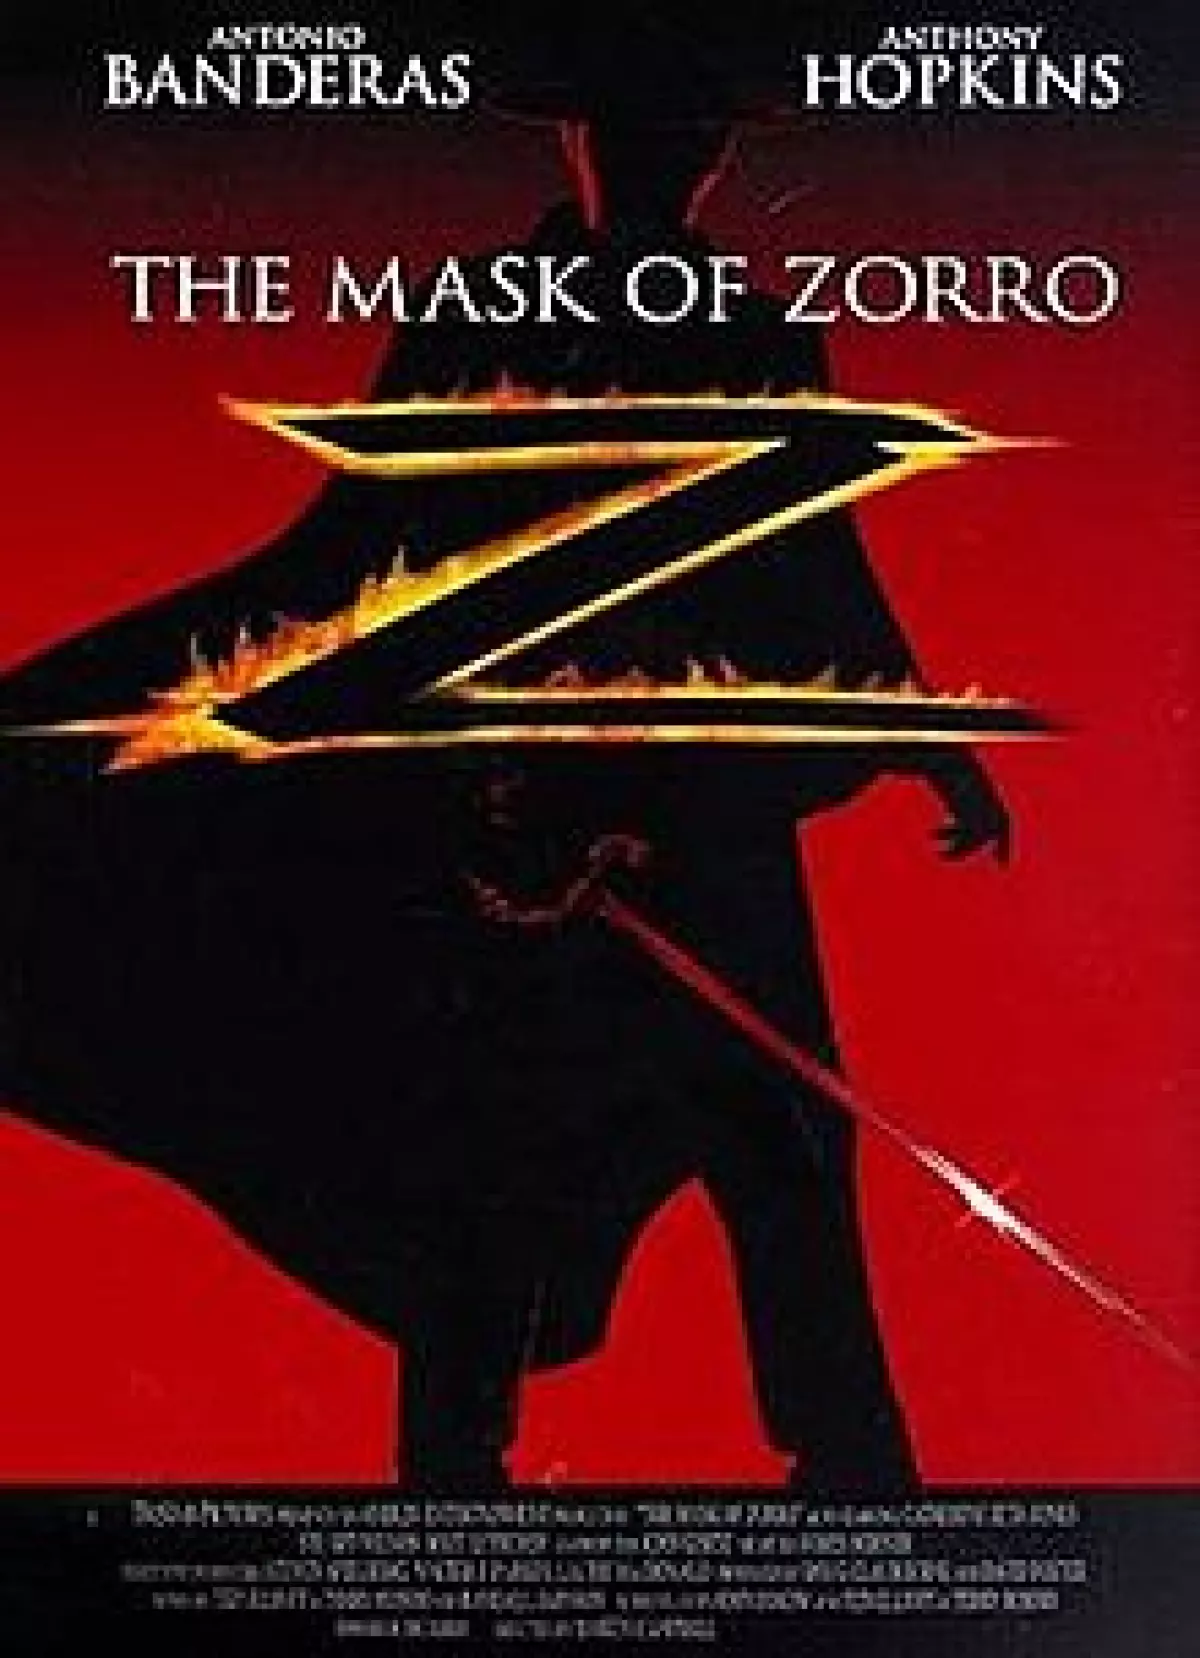 Antonio Banderas portrayed Zorro.